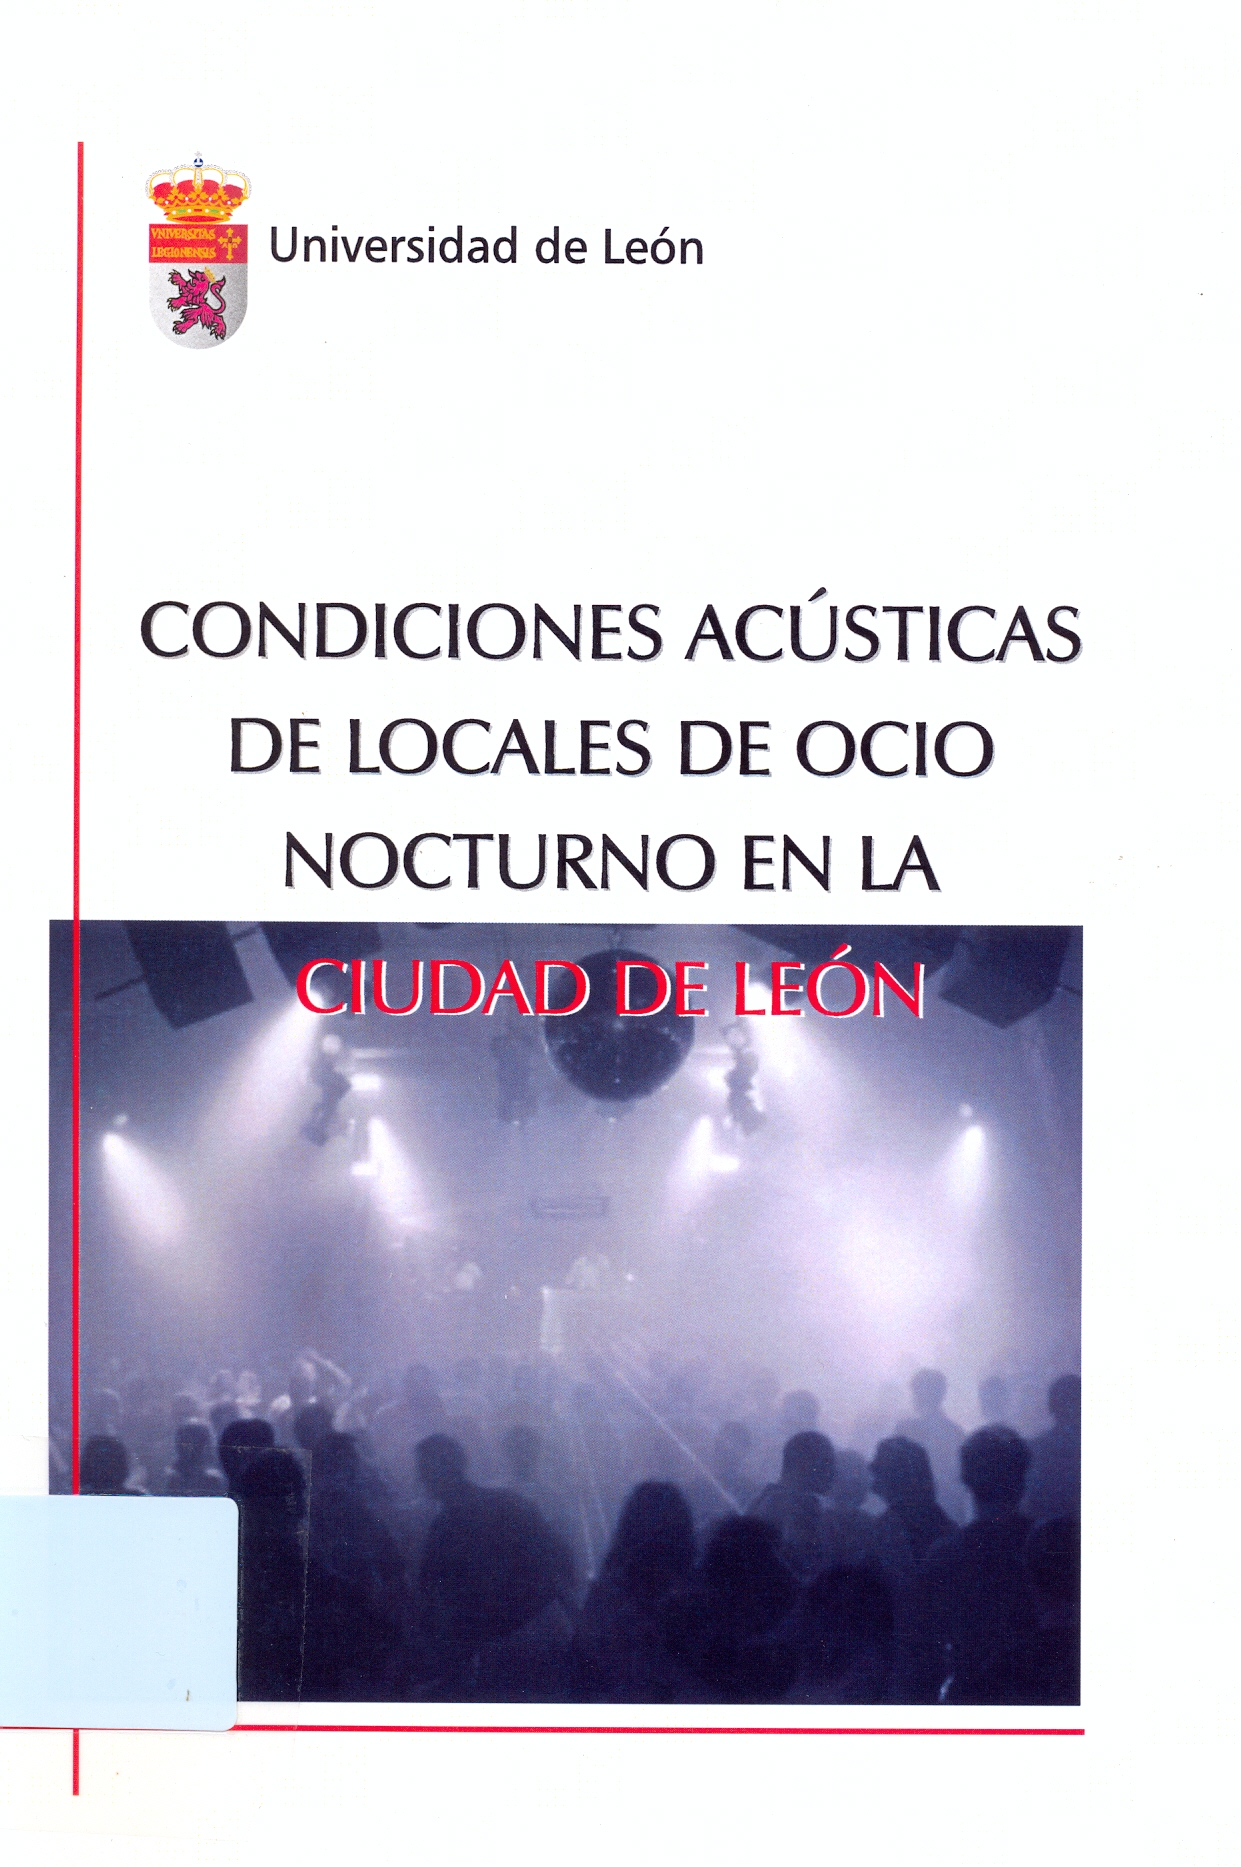 Imagen de portada del libro Condiciones acústicas de locales de ocio nocturno en la ciudad de León